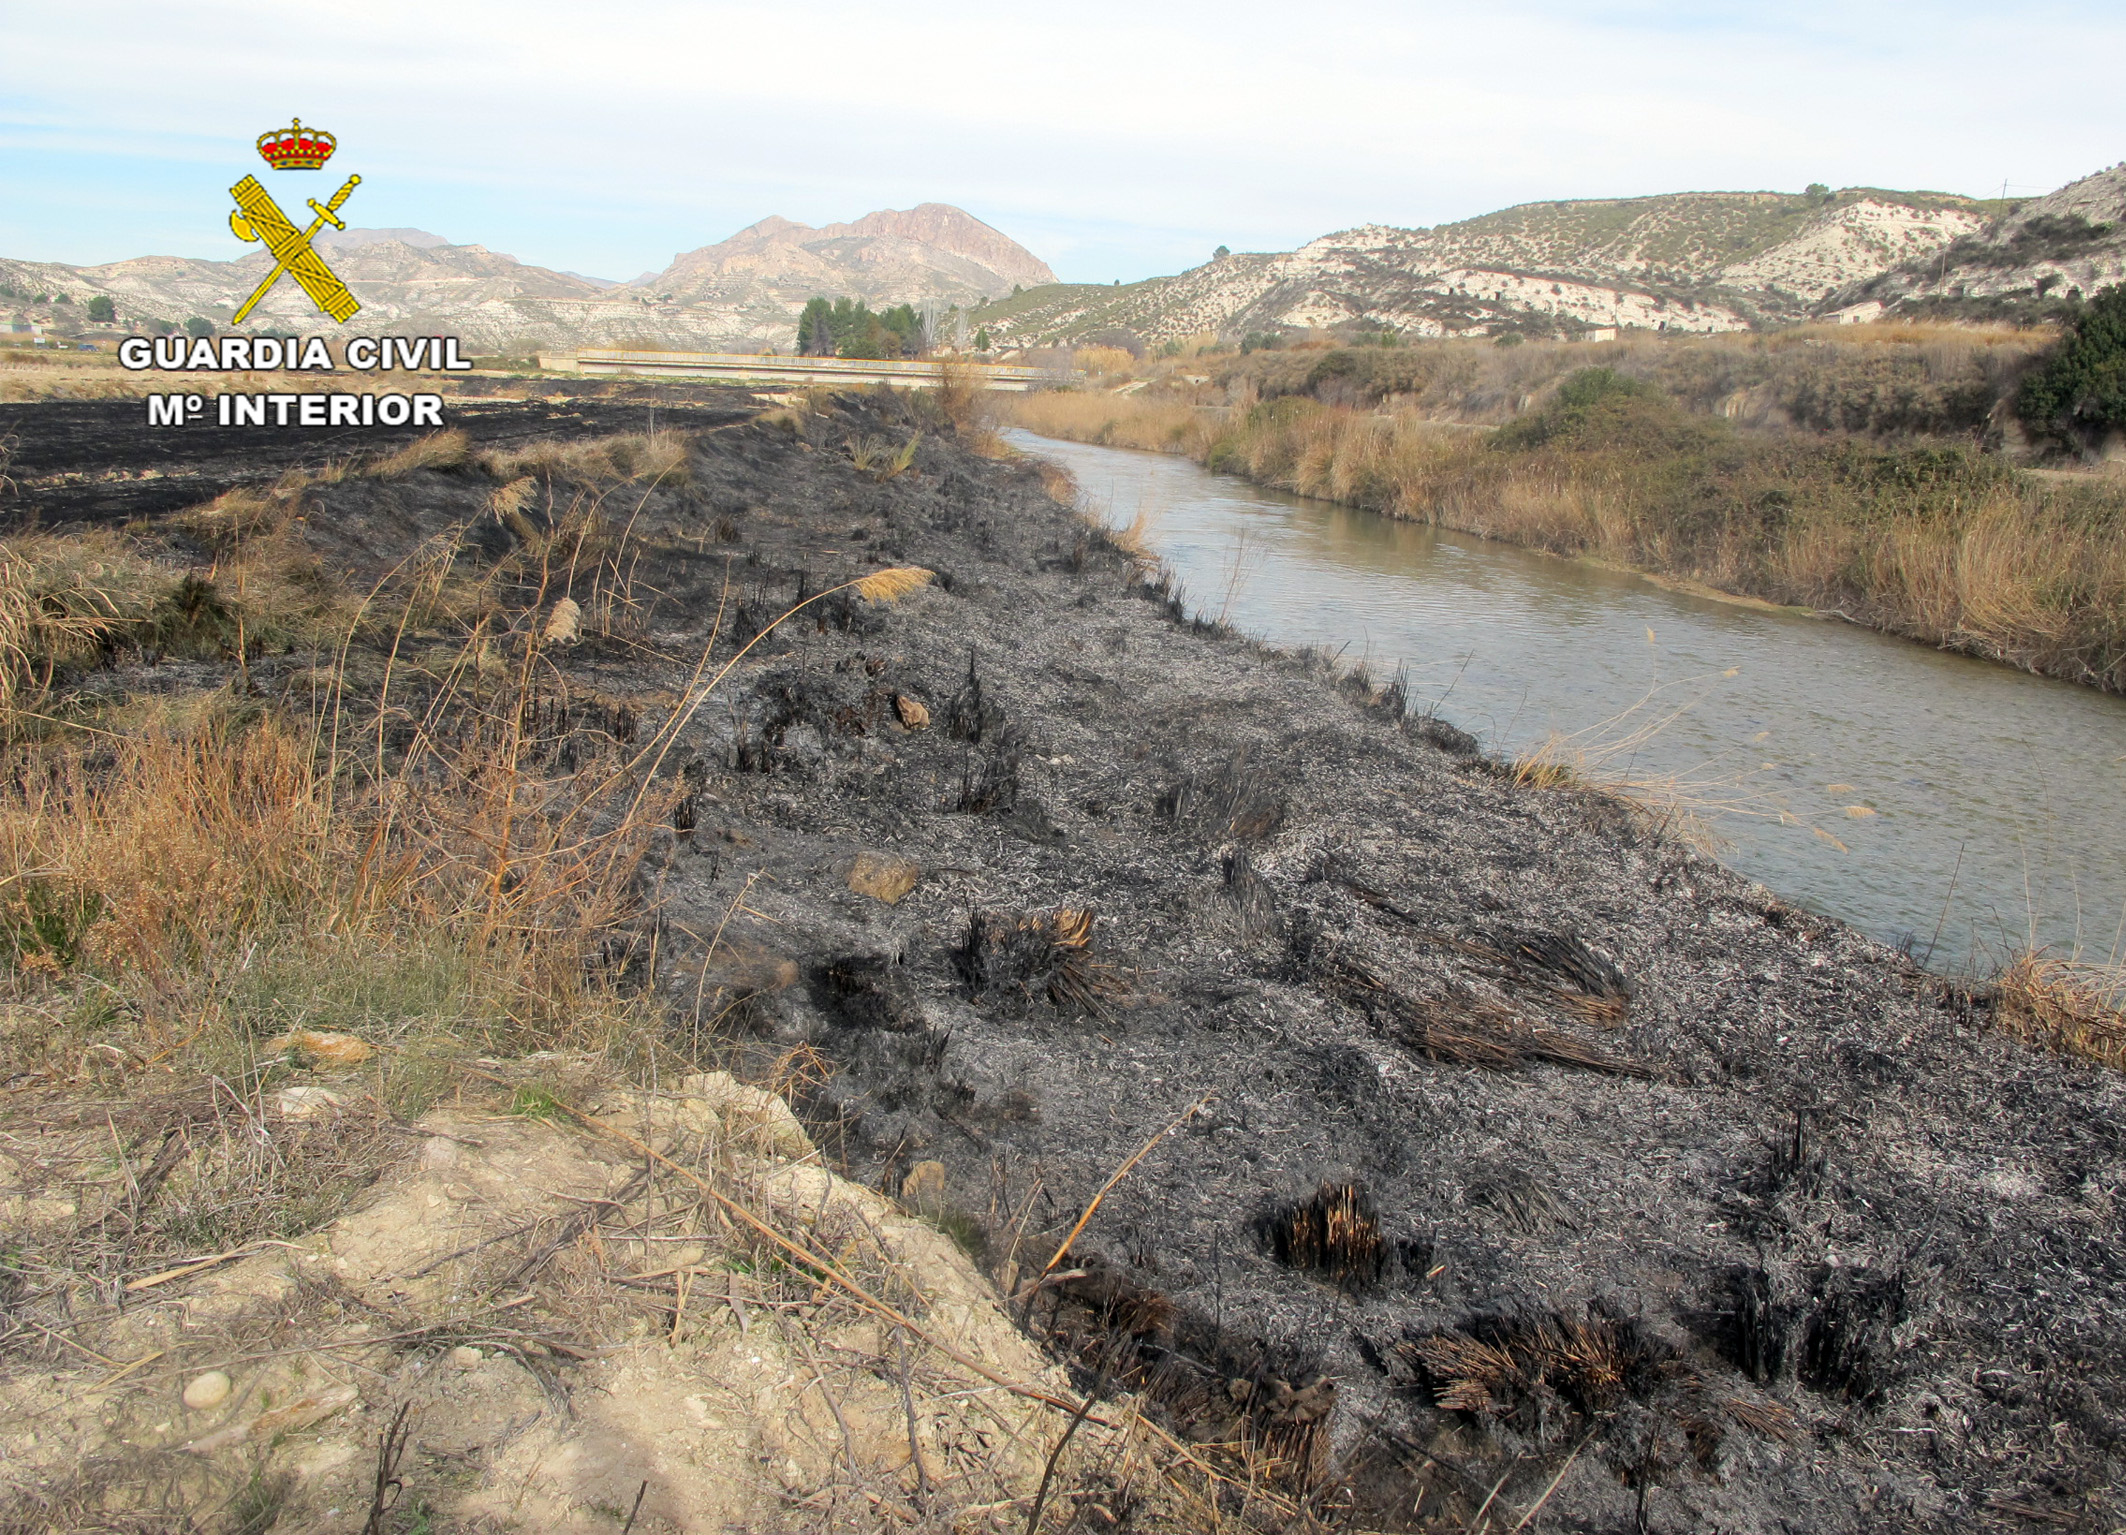 El fuego afectó a más de 4.000 metros cuadrados de terreno forestal con diversa vegetación. Imagen: Guardia Civil de Murcia